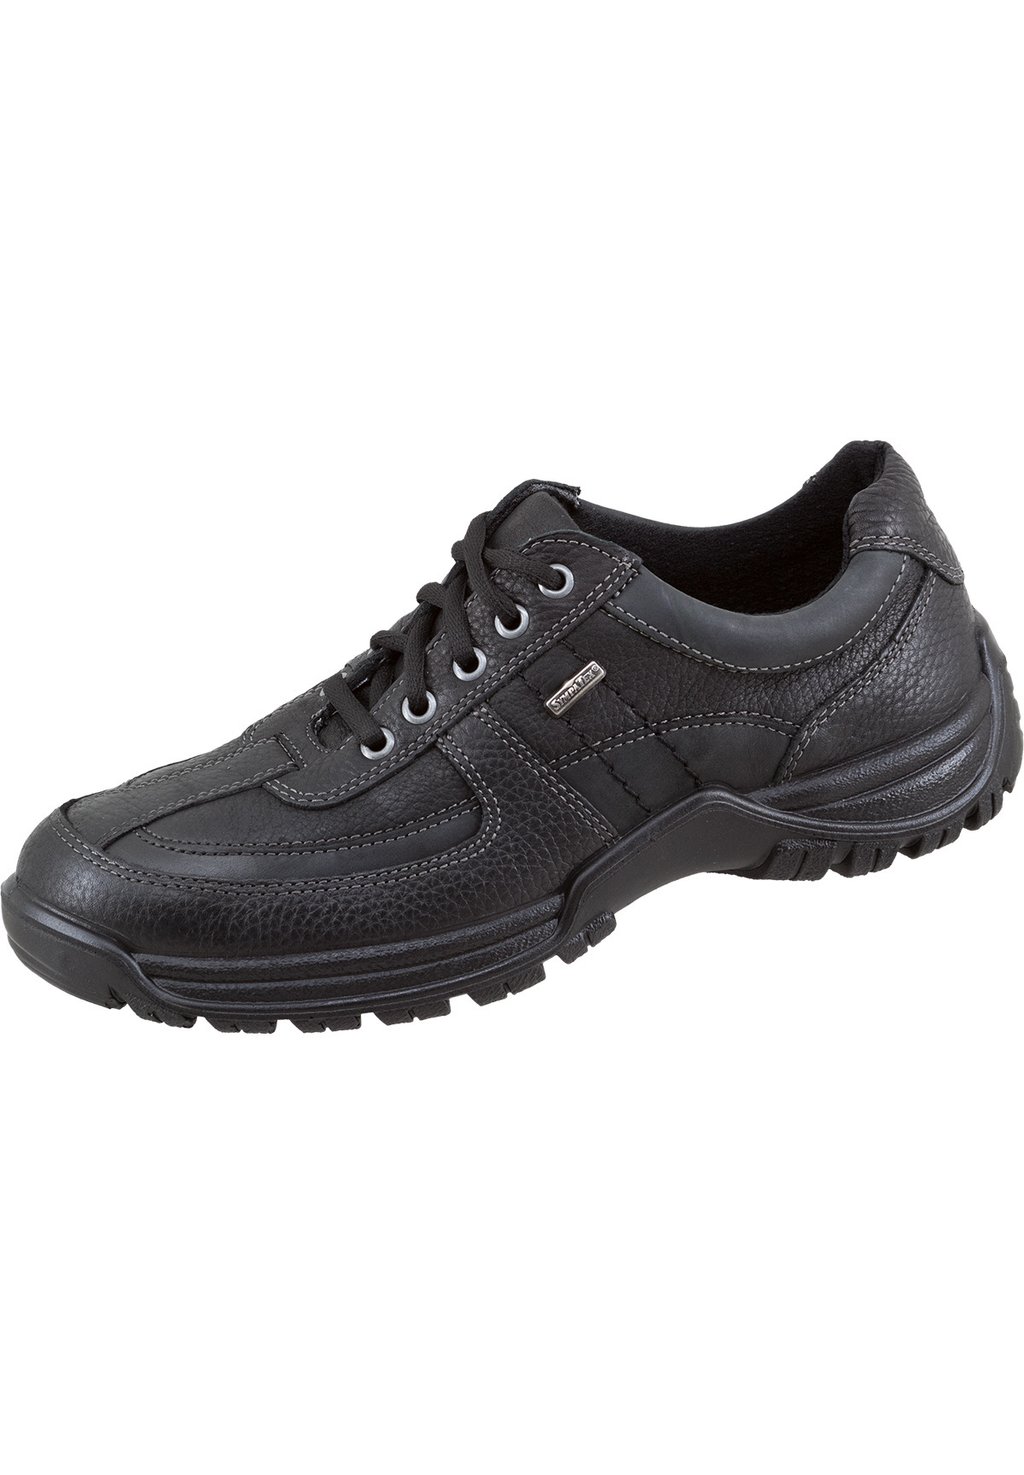 Спортивные туфли на шнуровке Jomos, цвет schwarz